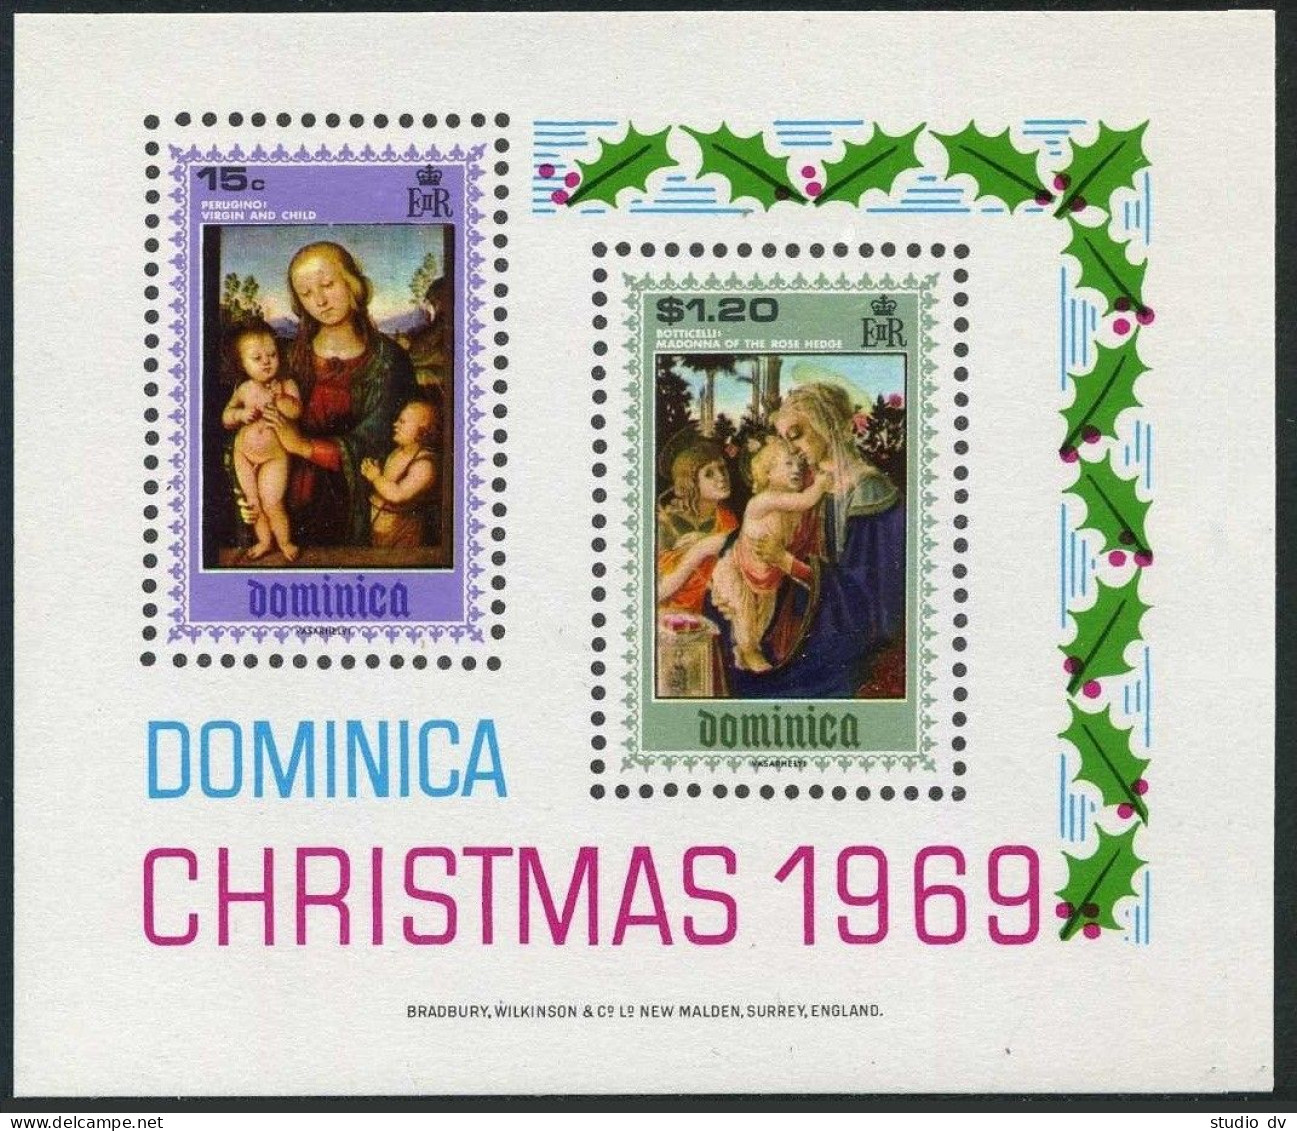 Dominica 287-290,290a, MNH. Filippino Lippi, Raphael, Perugino, Bottichelli,1969 - Dominica (1978-...)